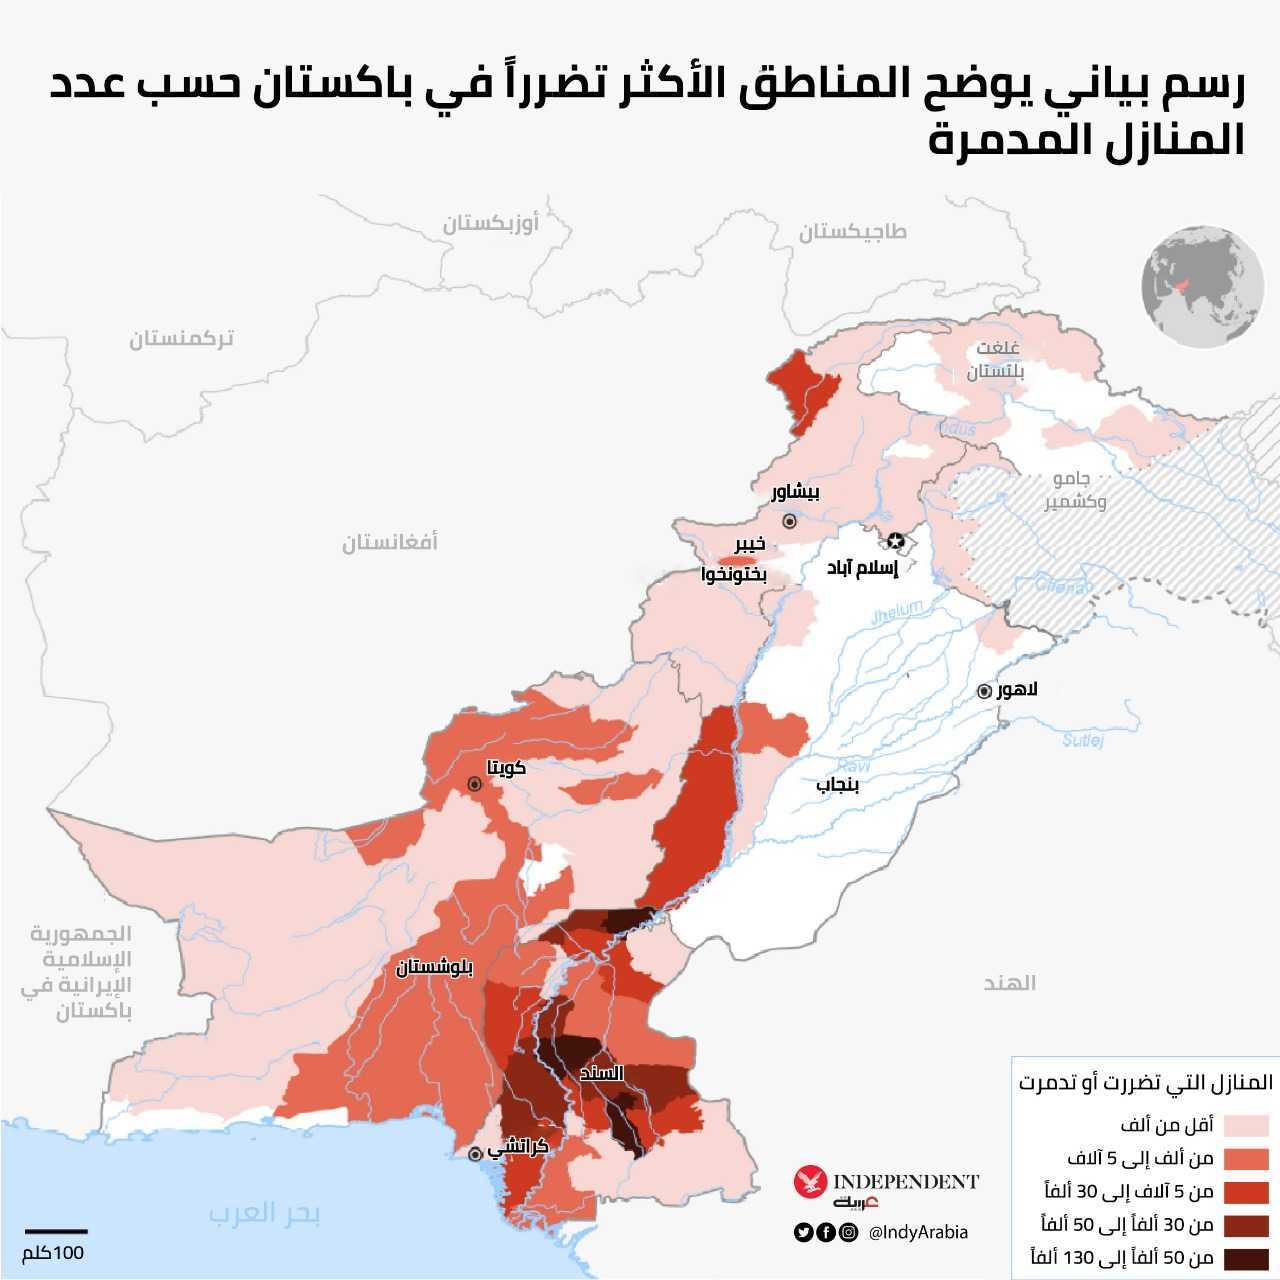 رسم بياني يوضح المناطق الأكثر تضرراً في باكستان بحسب عدد المنازل المدمرة (مكتب الأمم المتحدة لتنسيق الشؤون الإنسانية)